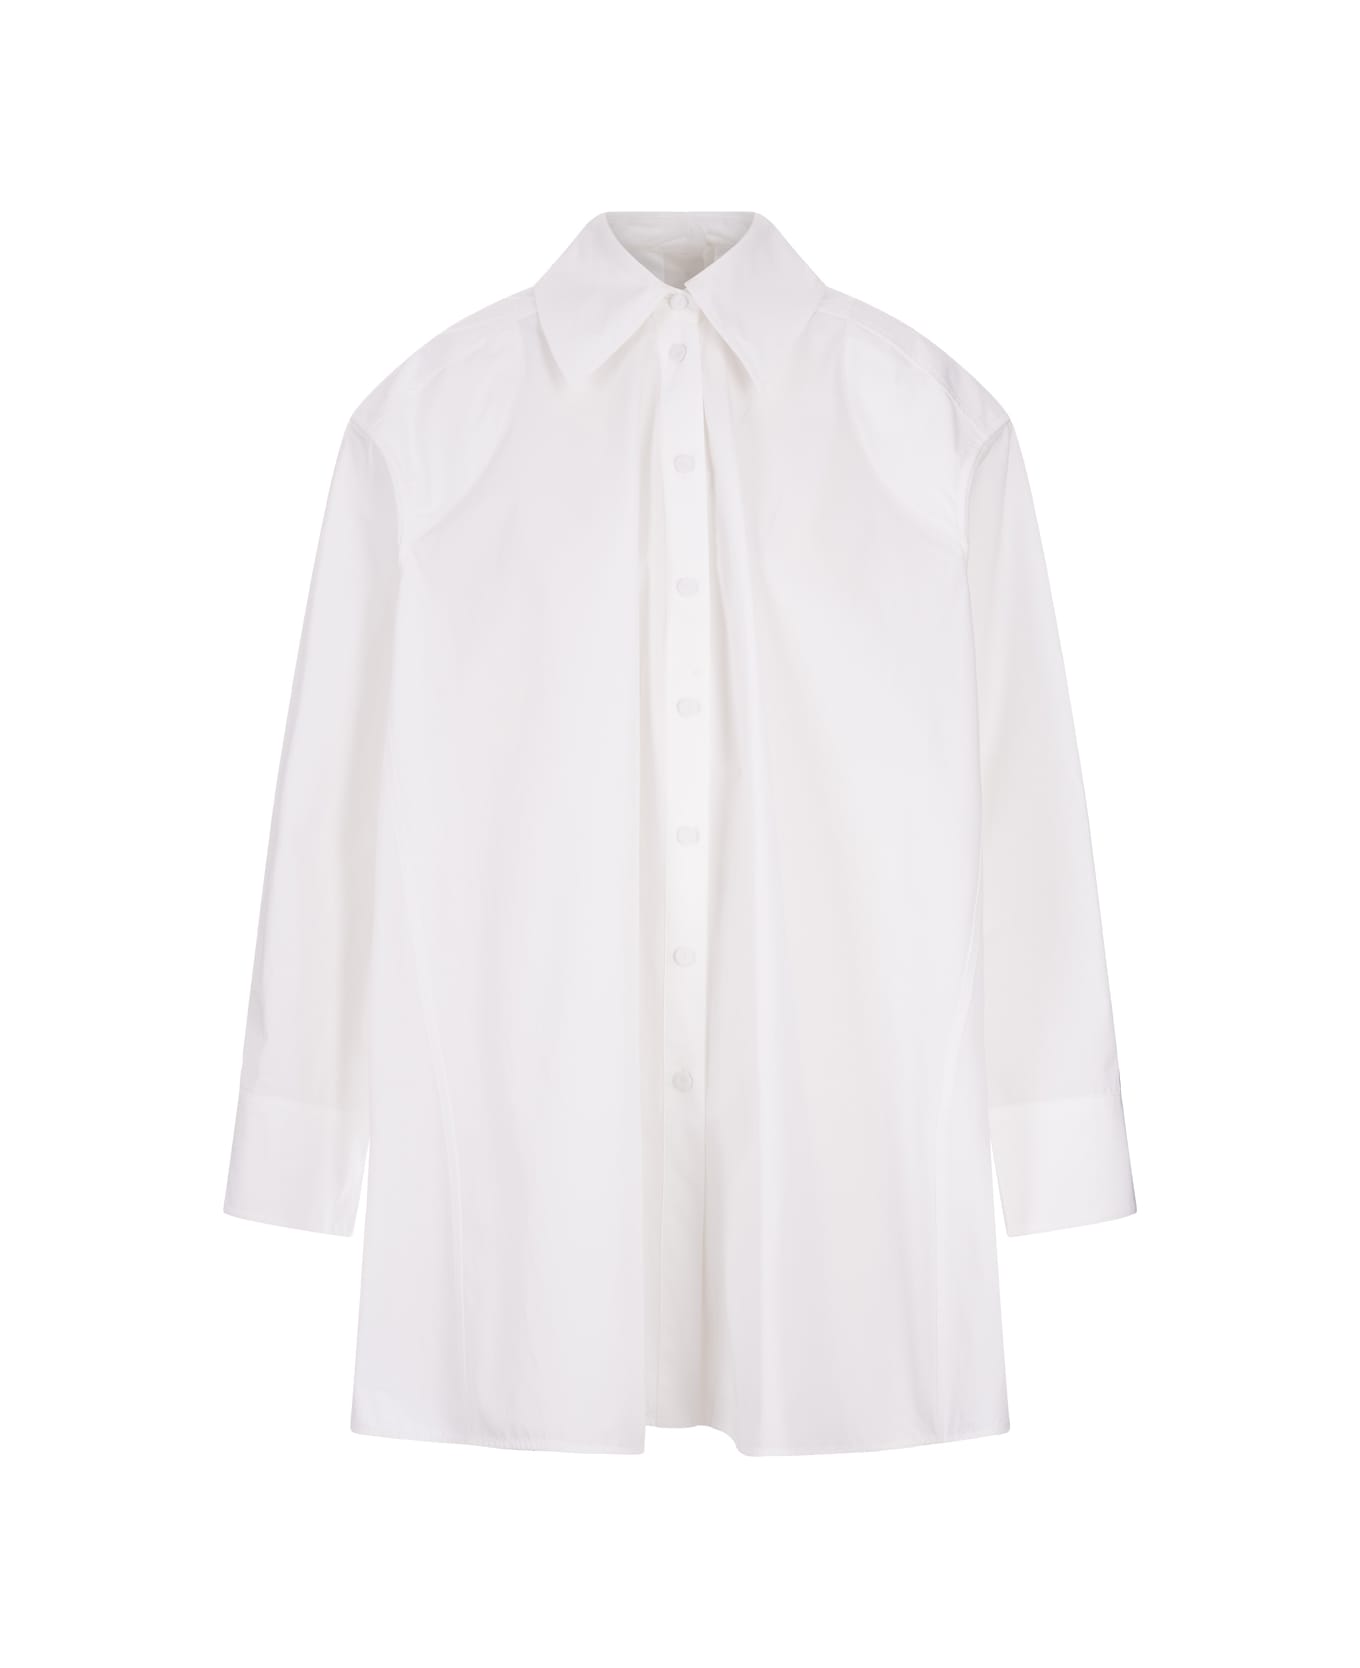 Jil Sander White Cotton Voluminous Shirt - White シャツ